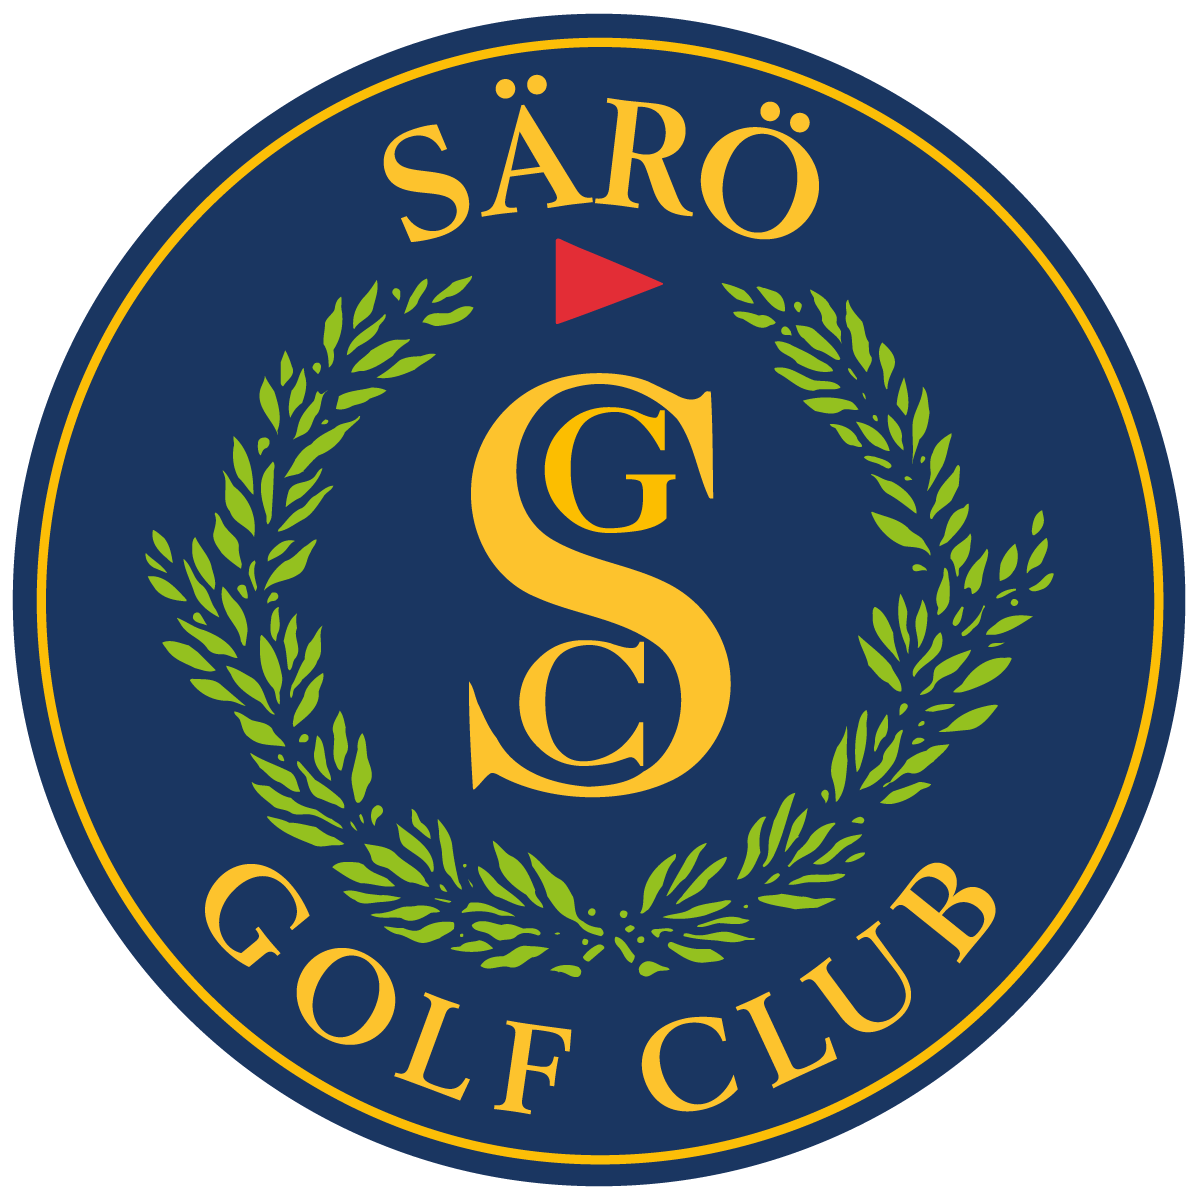 Särö Golf Club